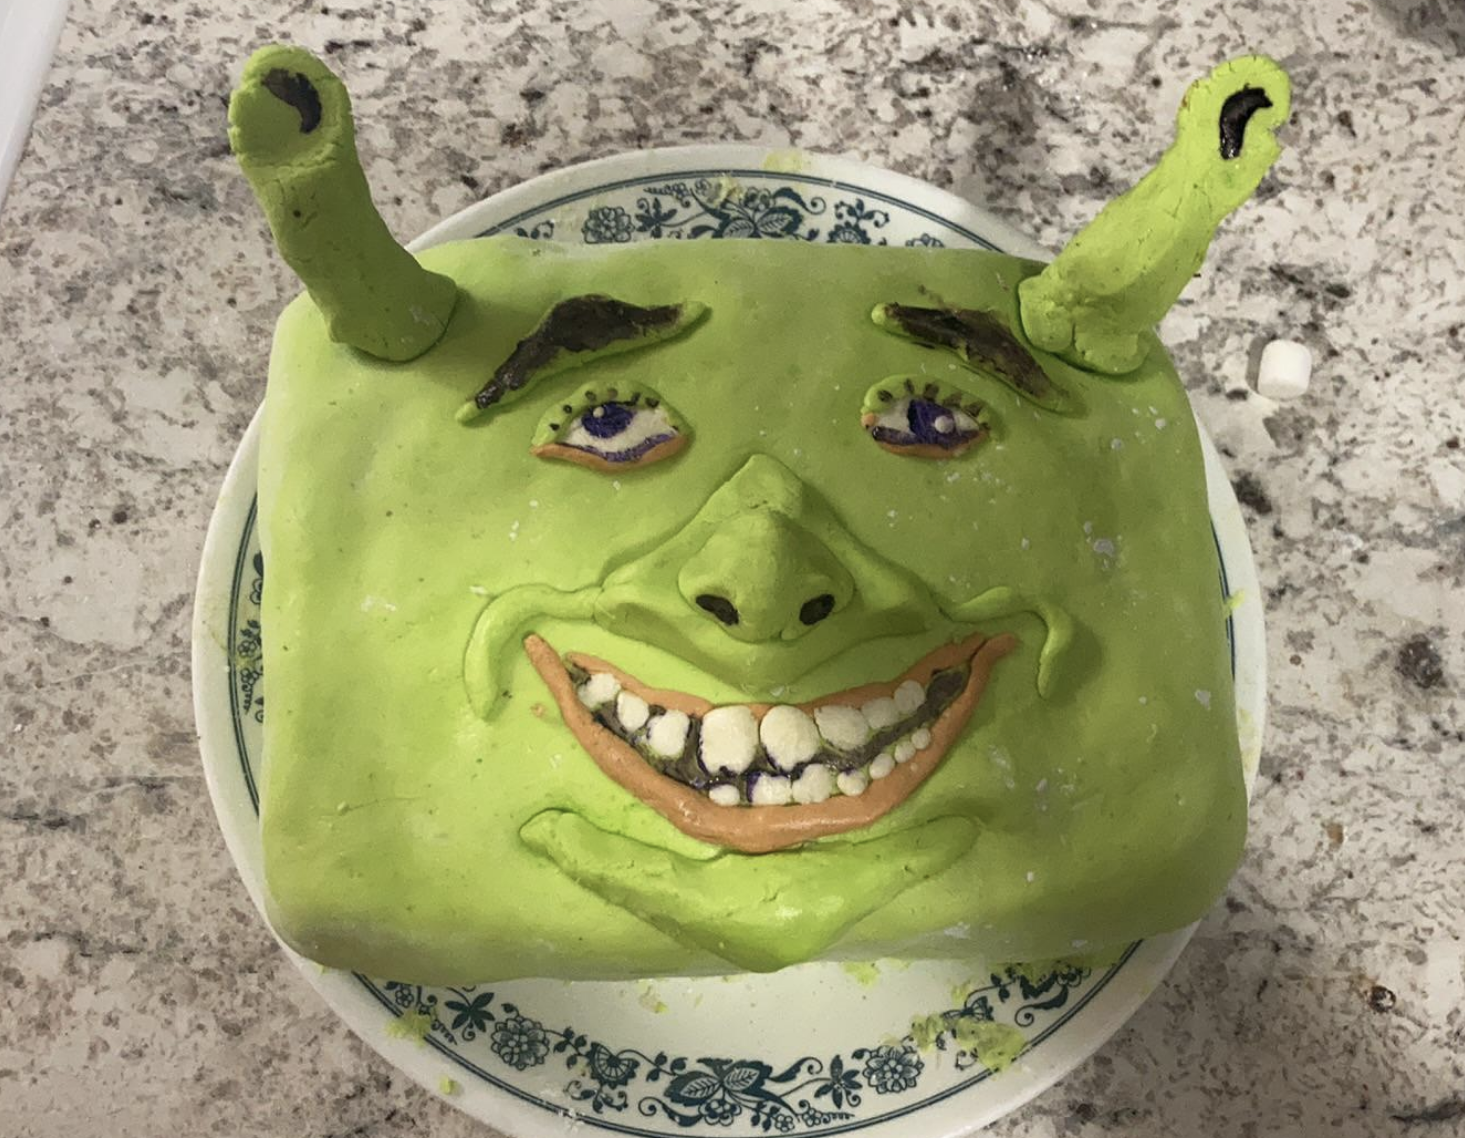 A Shrek cake